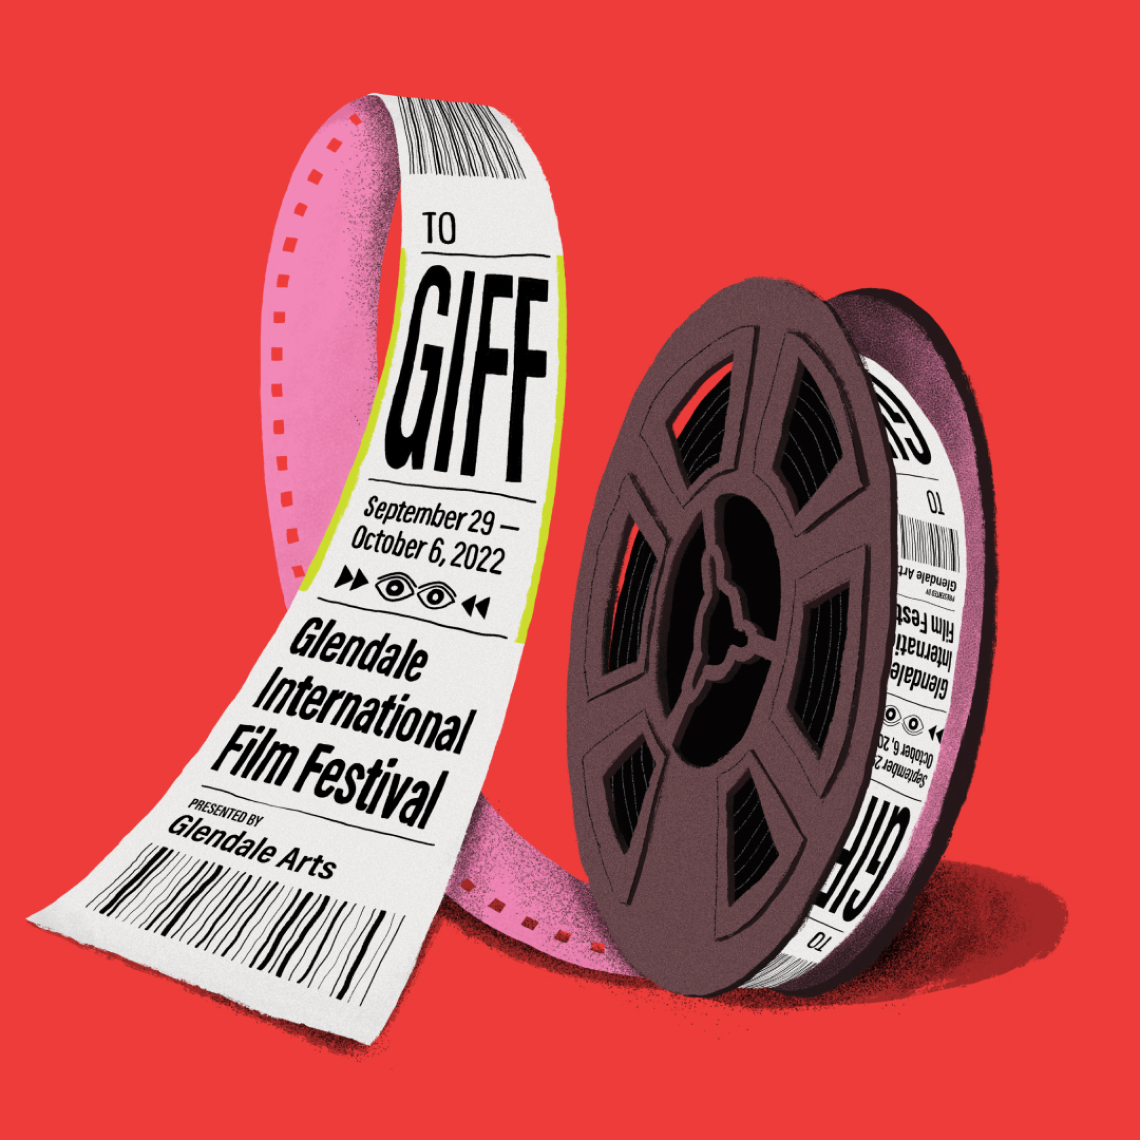 Glendale International Film Festival Key Art designed by Kilter.